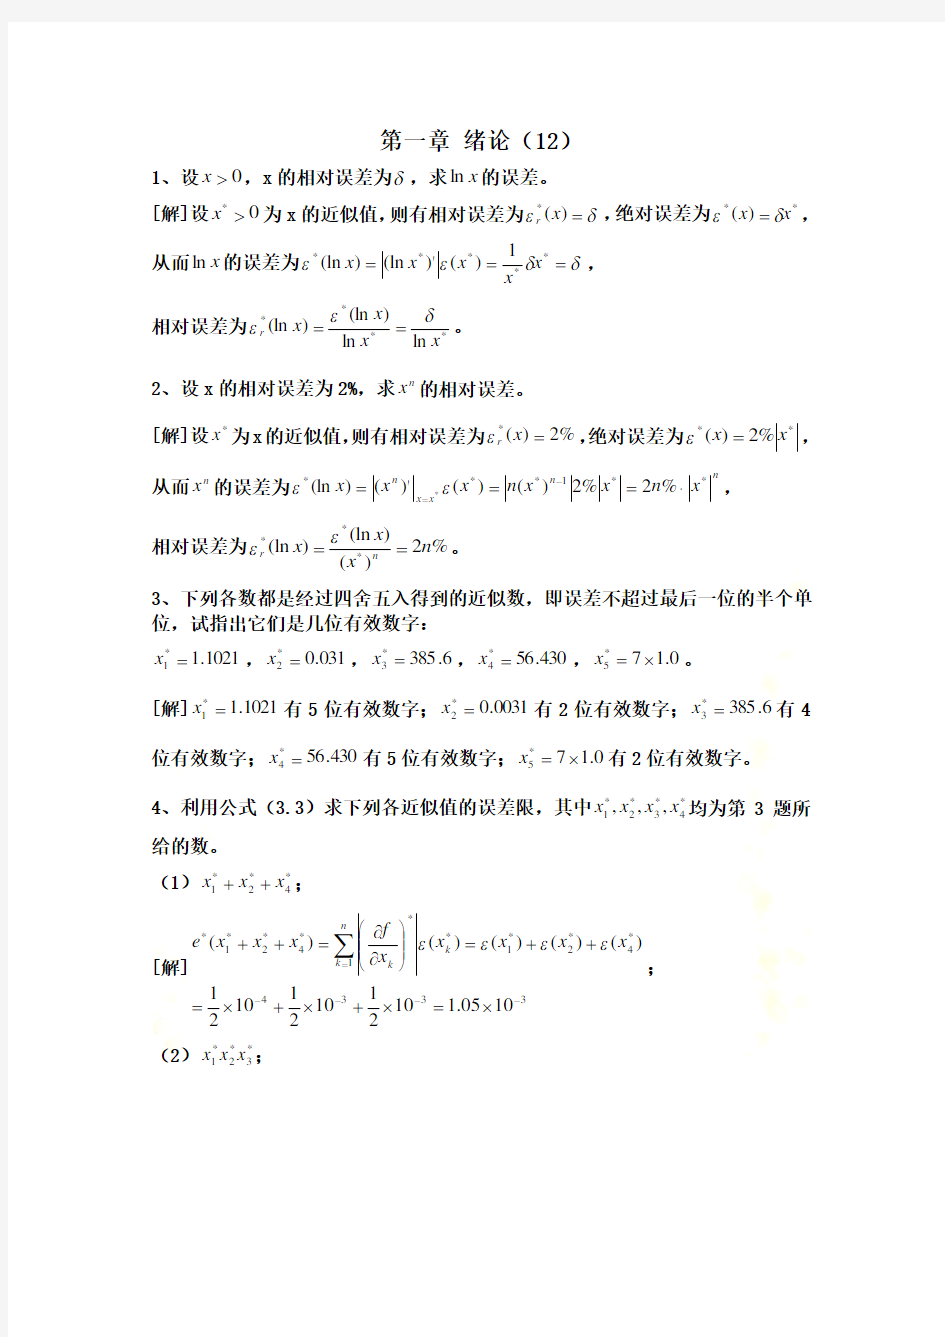 数值分析课程第五版课后习题答案(李庆扬等)1